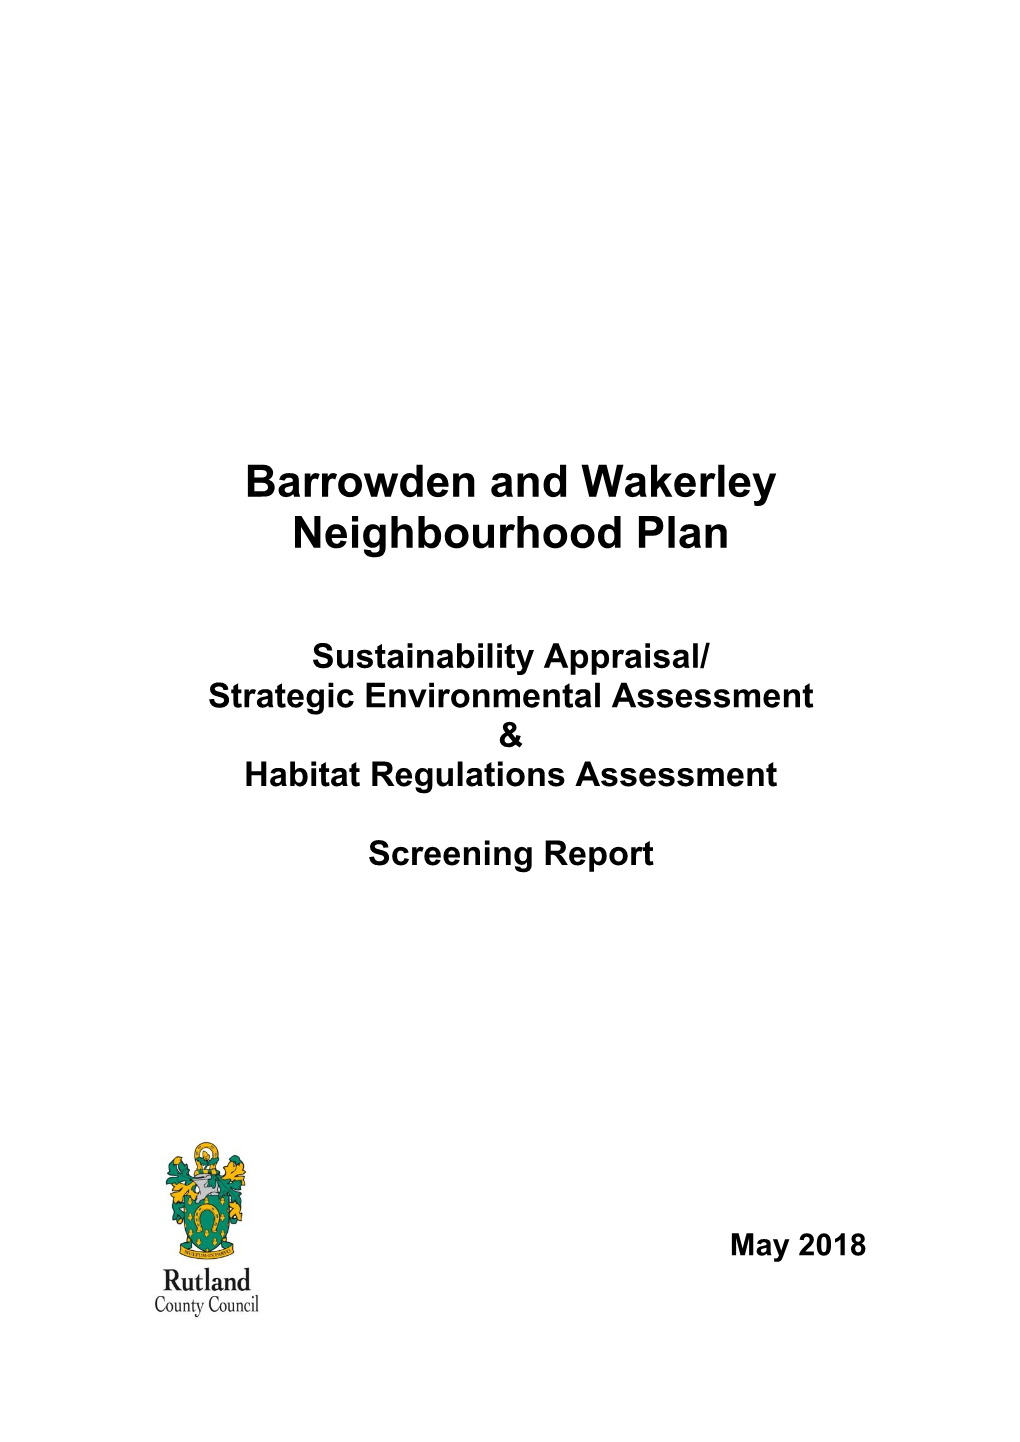 Barrowden and Wakerley Neighbourhood Plan